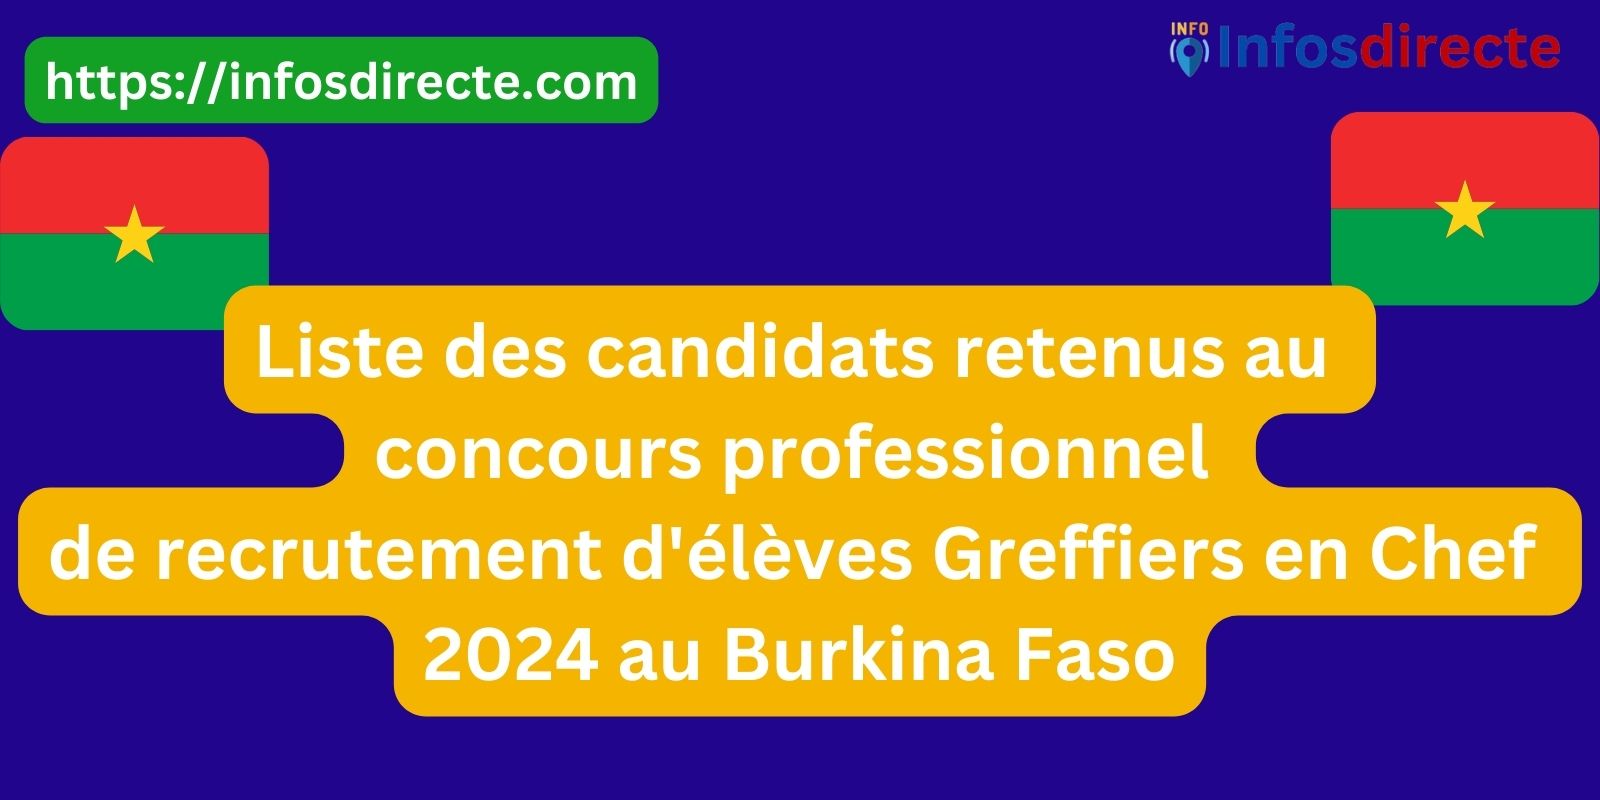 Liste des candidats retenus au concours professionnel de recrutement d'élèves Greffiers en Chef 2024 au Burkina Faso